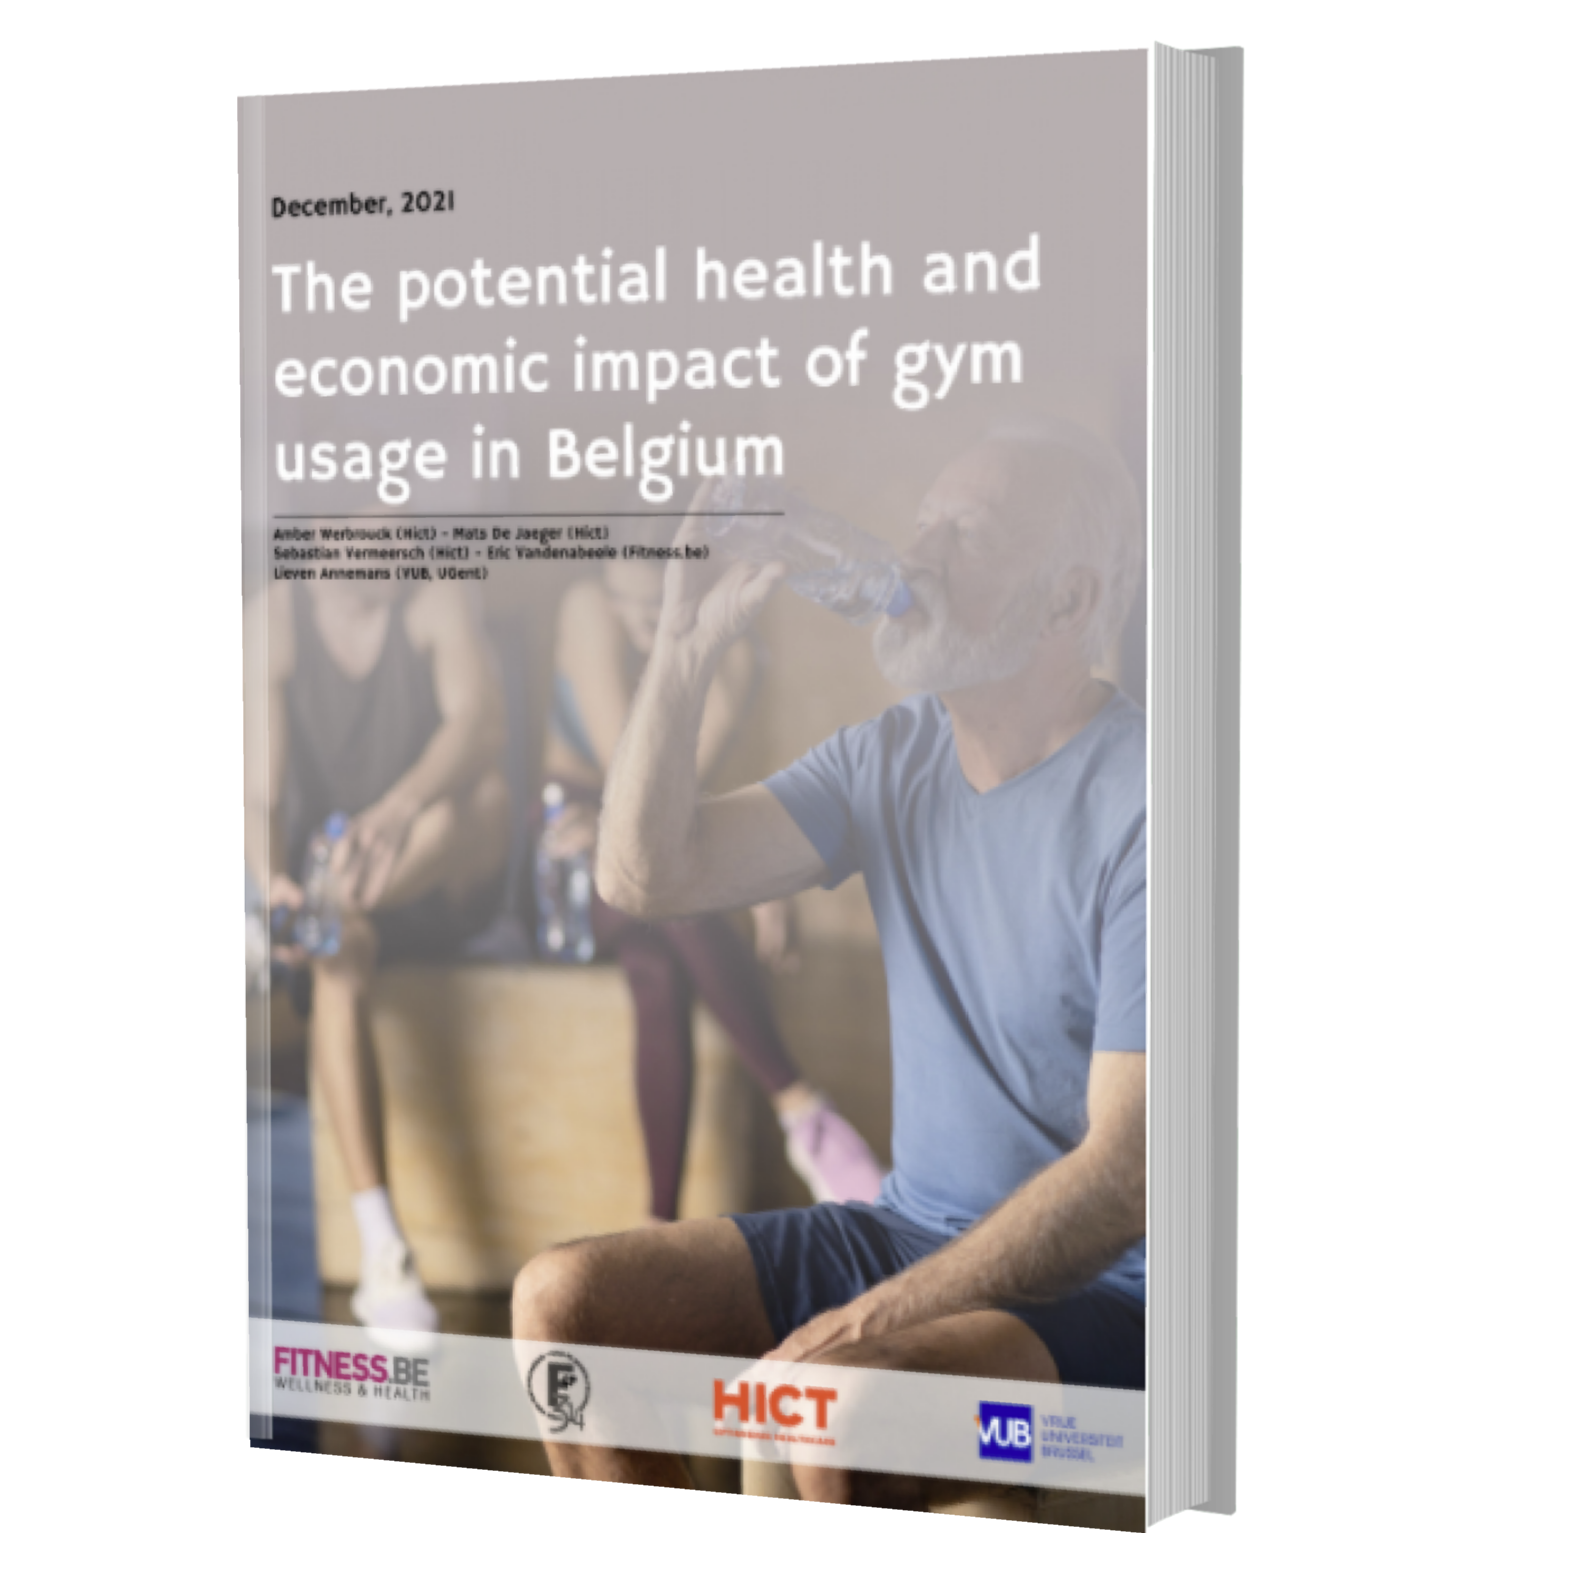 Download nu: onderzoeksrapport naar maatschappelijke impact van fitness (Fitness.be & Vrije Universiteit Brussel)